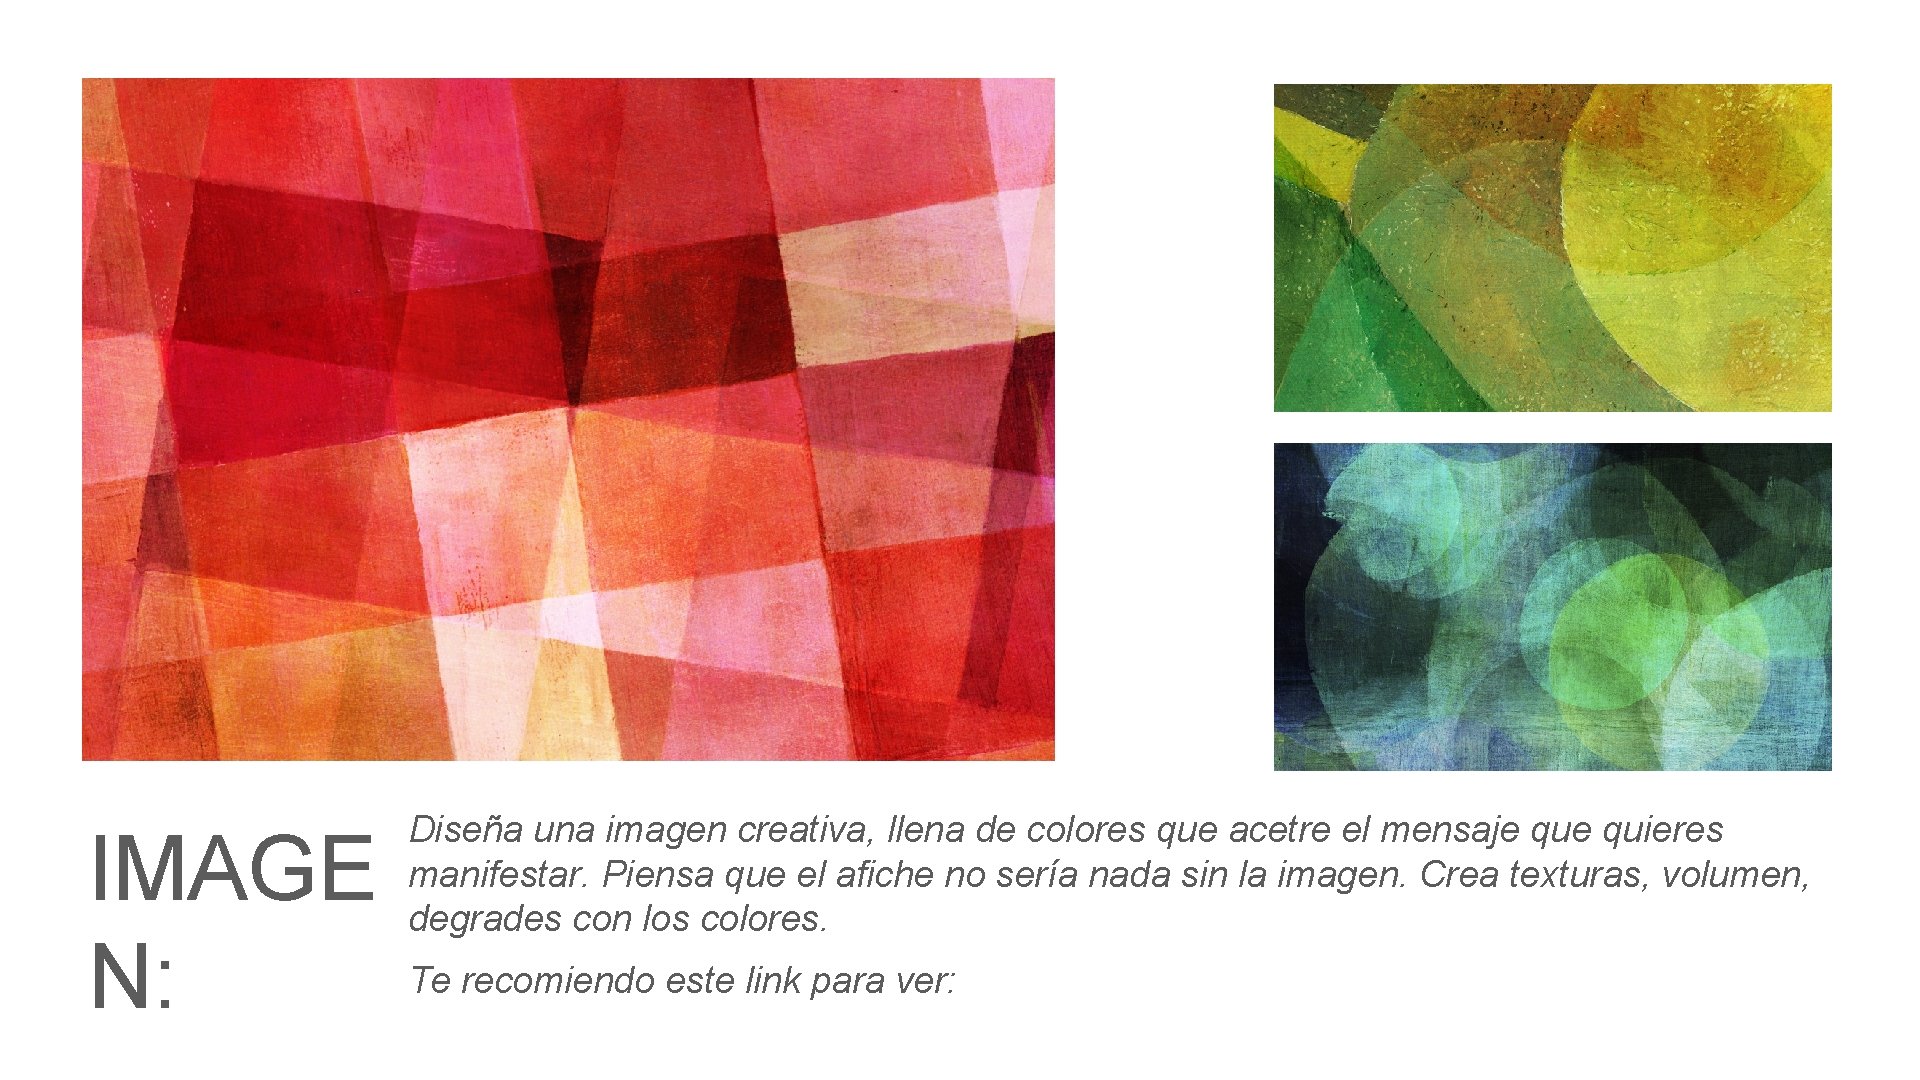 IMAGE N: Diseña una imagen creativa, llena de colores que acetre el mensaje quieres